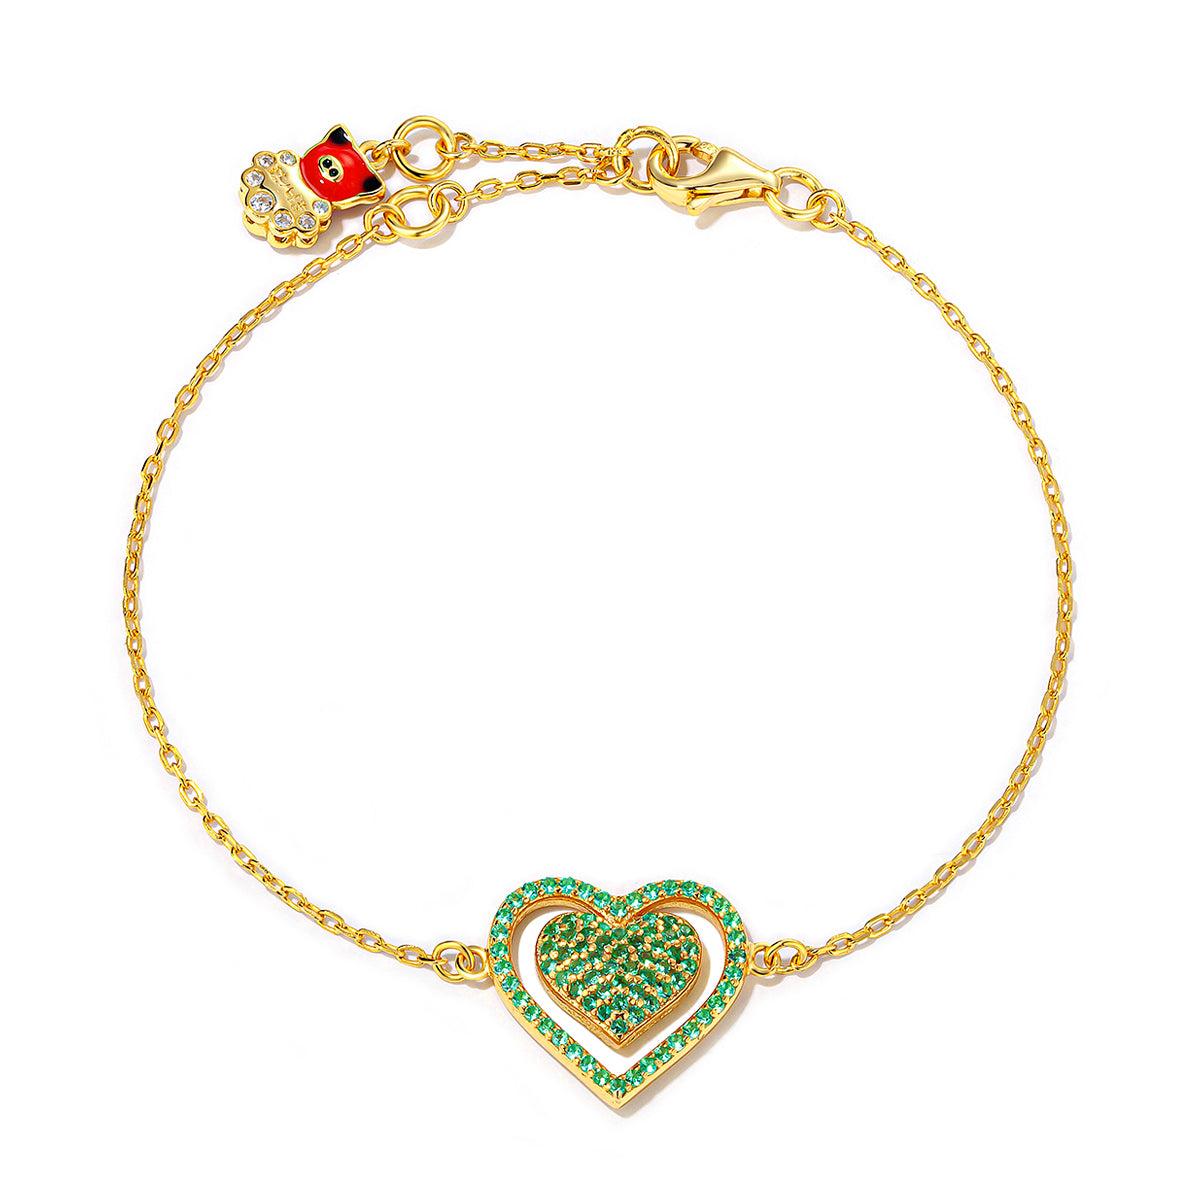 14K Solid Gold Heart Bracelet